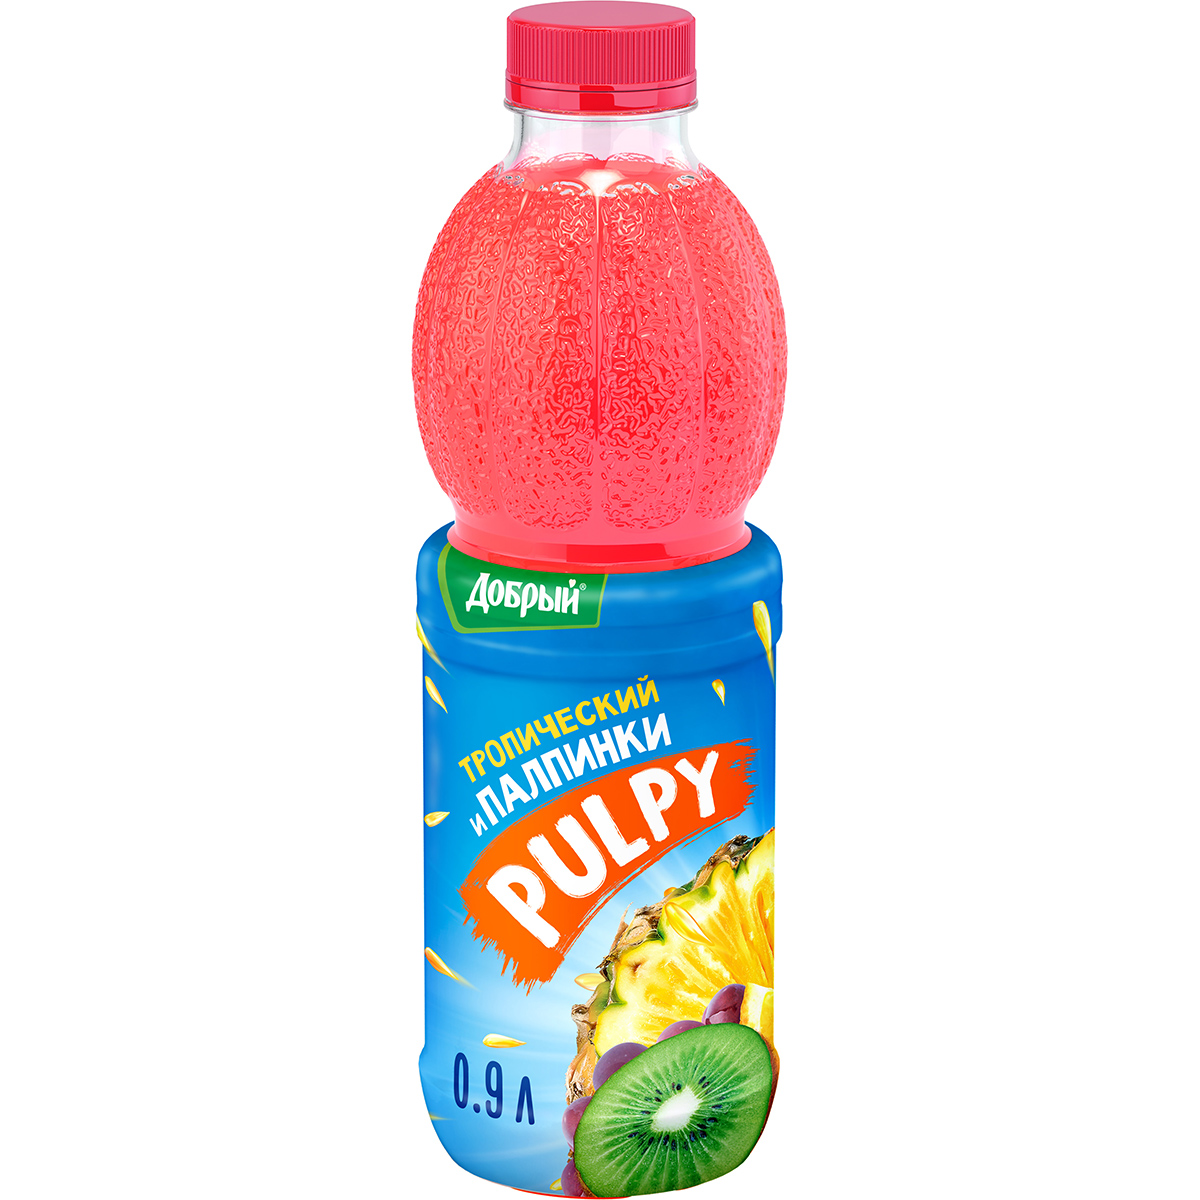 Напиток Pulpy сокосодержащий Тропический с мякотью 0,9 л напиток сокосодержащий pulpy маракуйя гуава и кусочки кокосового желе 0 45 л